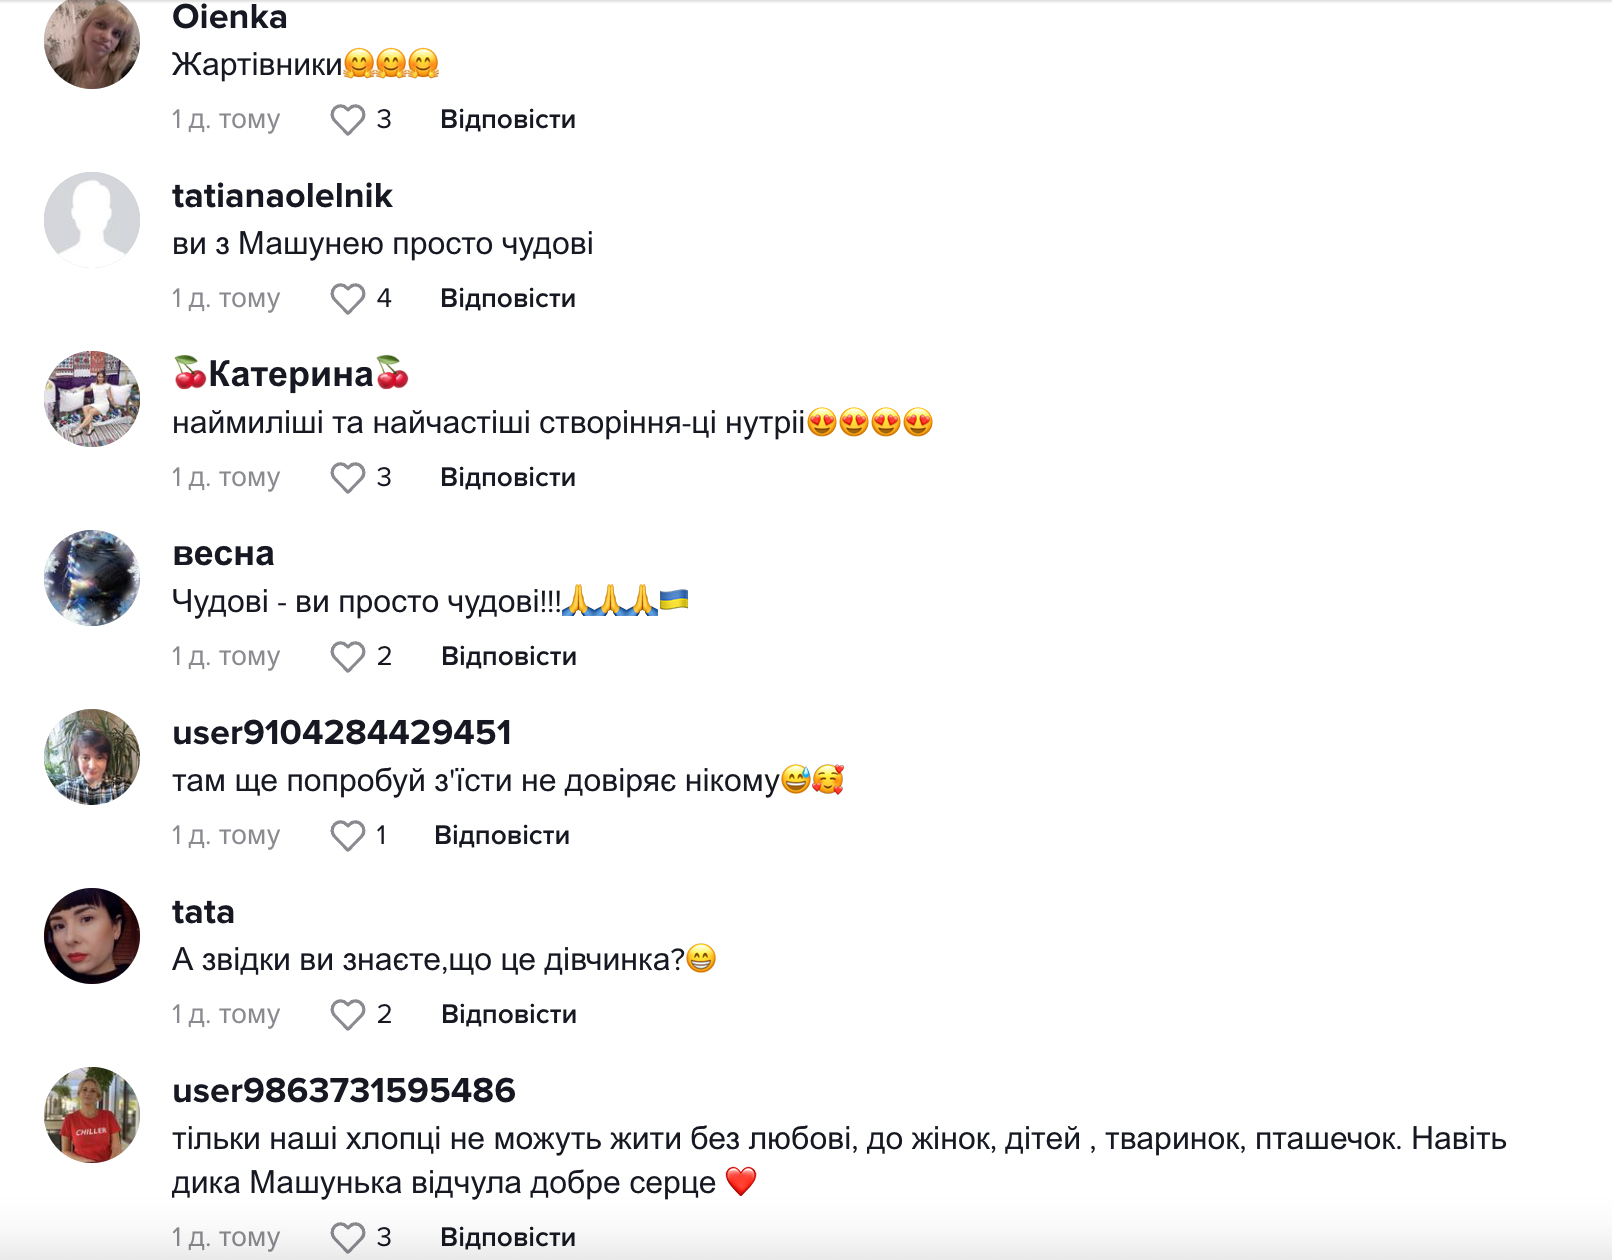 "Привіт, моя дівчинко!": український військовий показав нутрію, з якою "подружився" на службі. Відео 